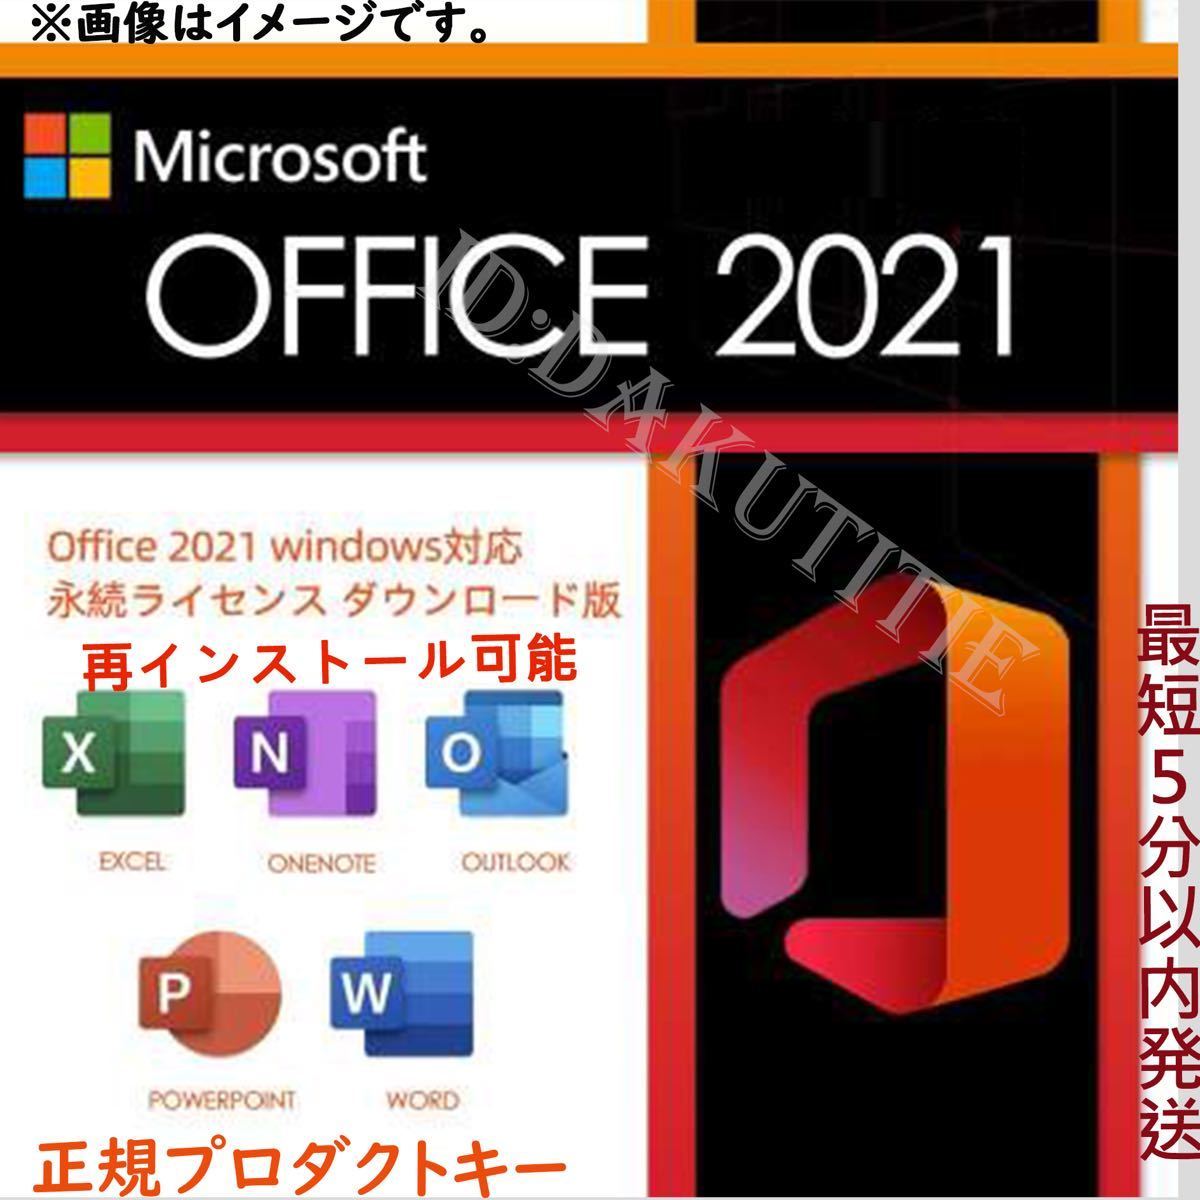 【認証保証 】Microsoft Office 2021 Professional Plus オフィス2021 プロダクトキー 正規 Word Excel 日本語版 手順書ありmの画像1